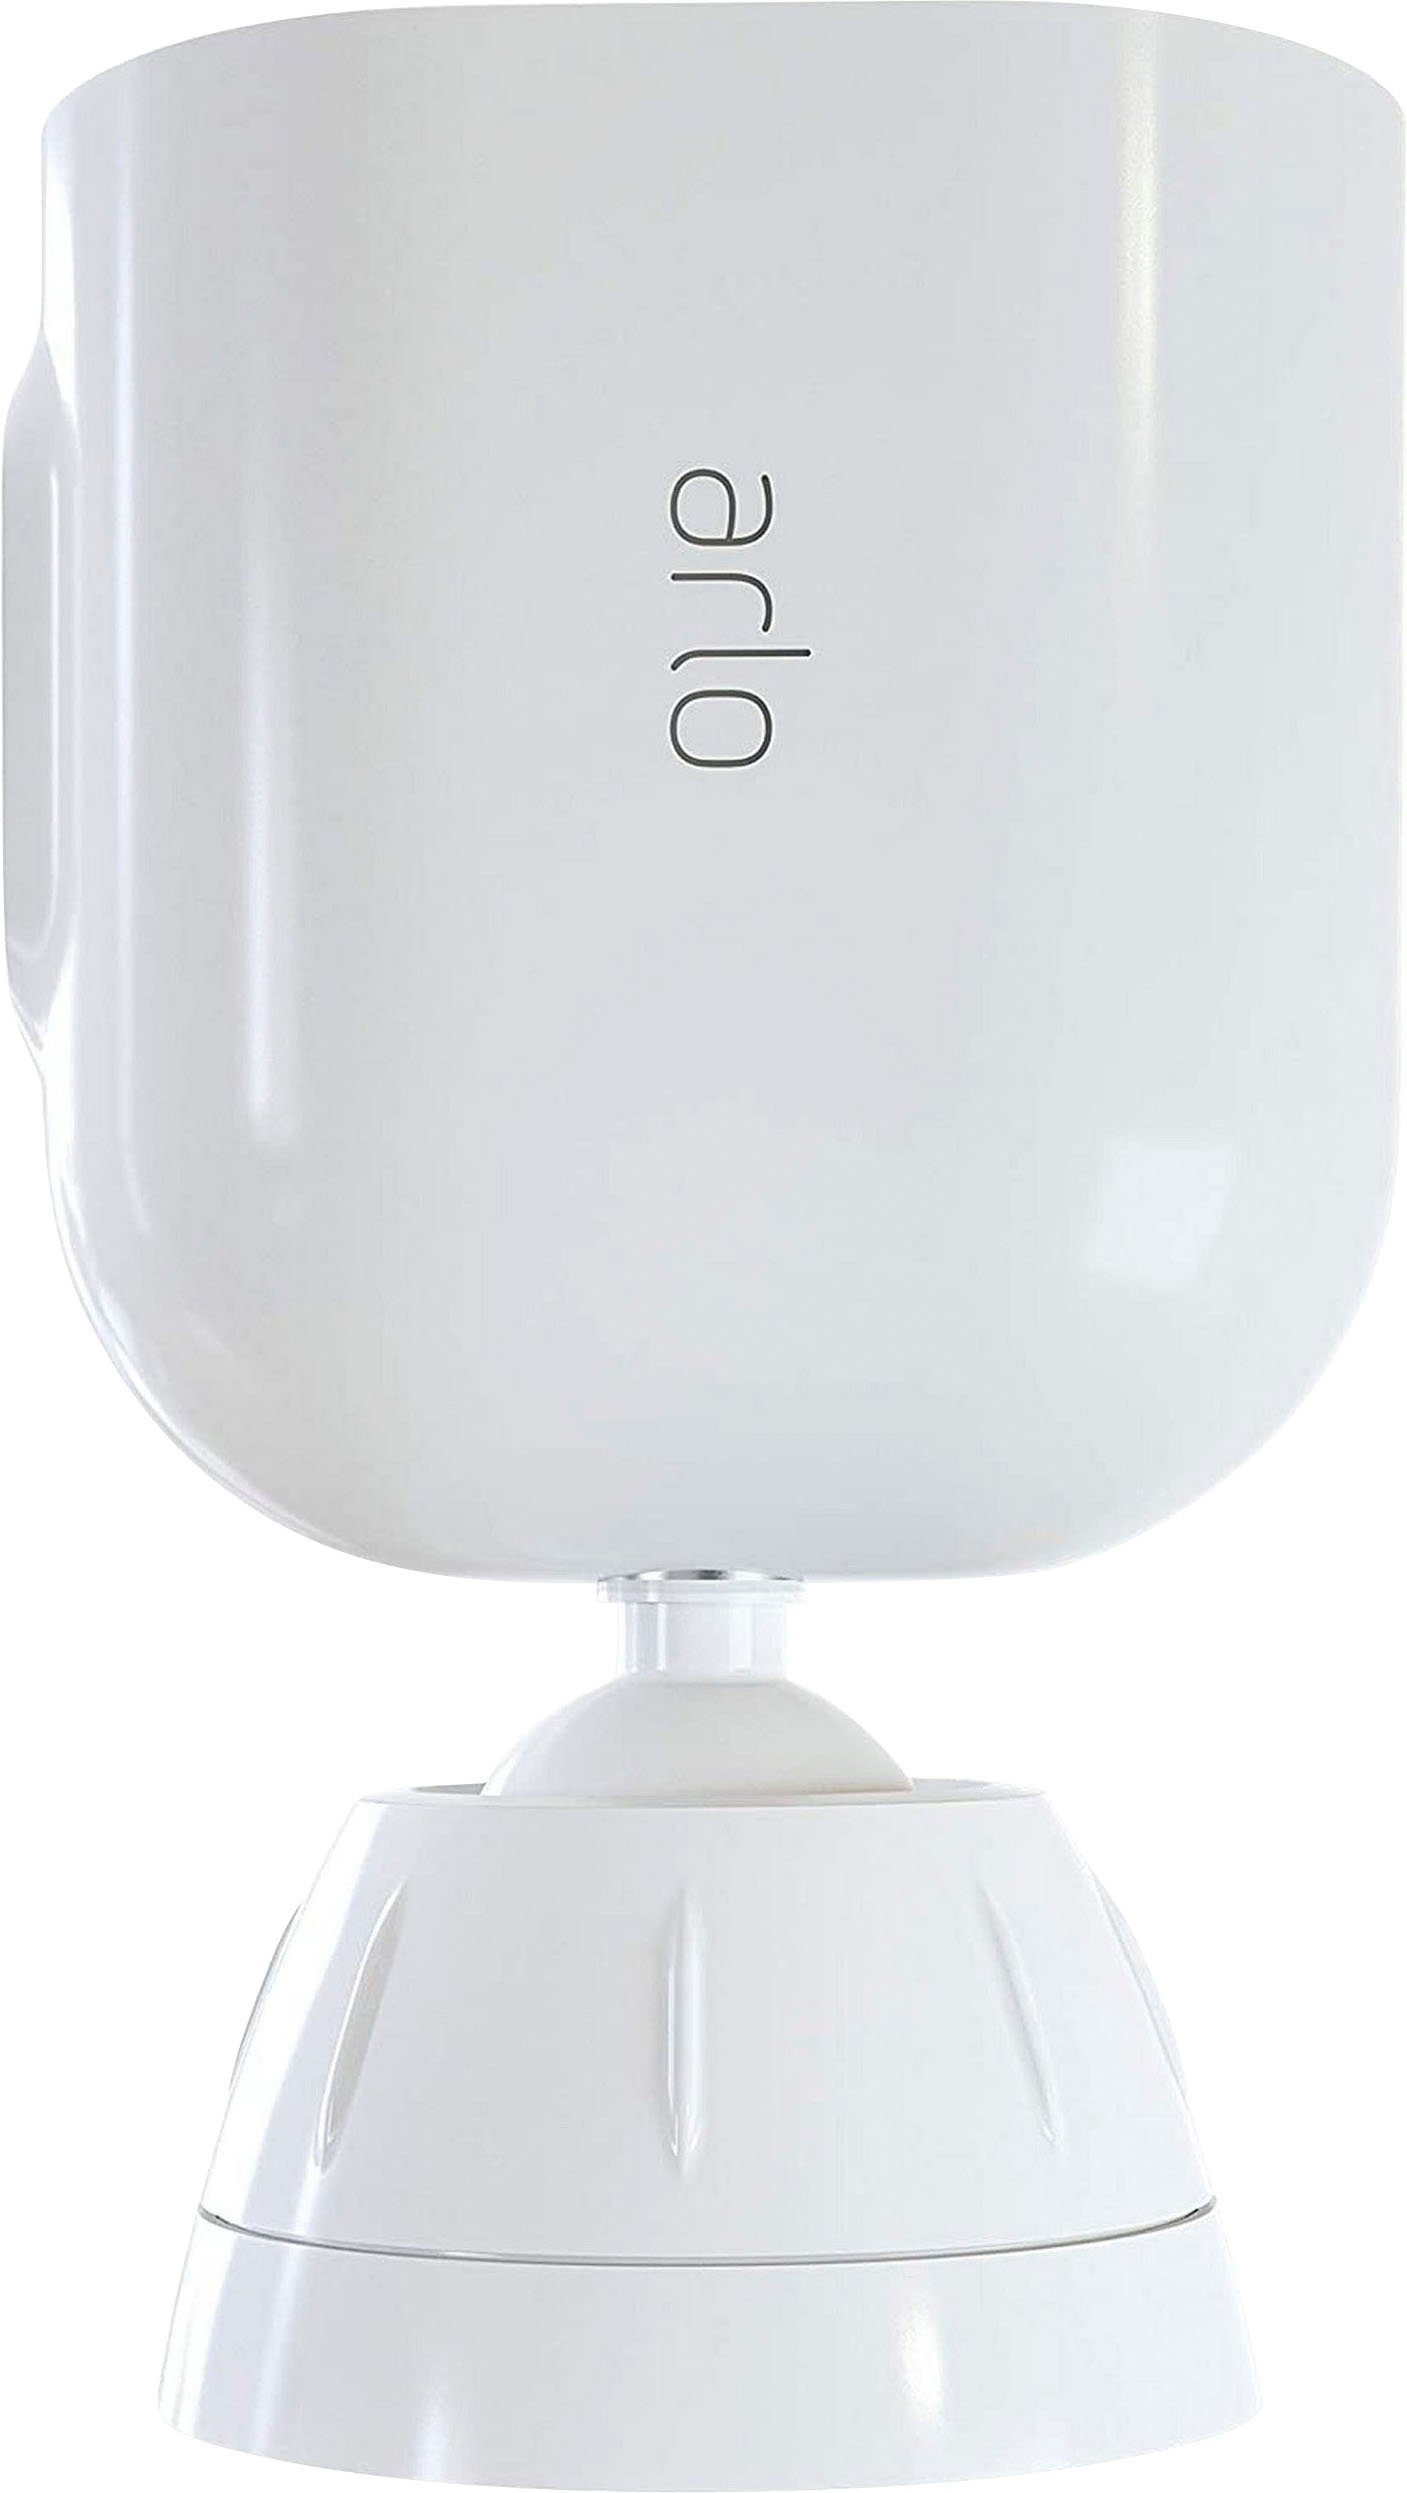 ARLO Total Security Halterung geeignet für Ultra & Pro3 Überwachungskameras Kamerahalterung | 